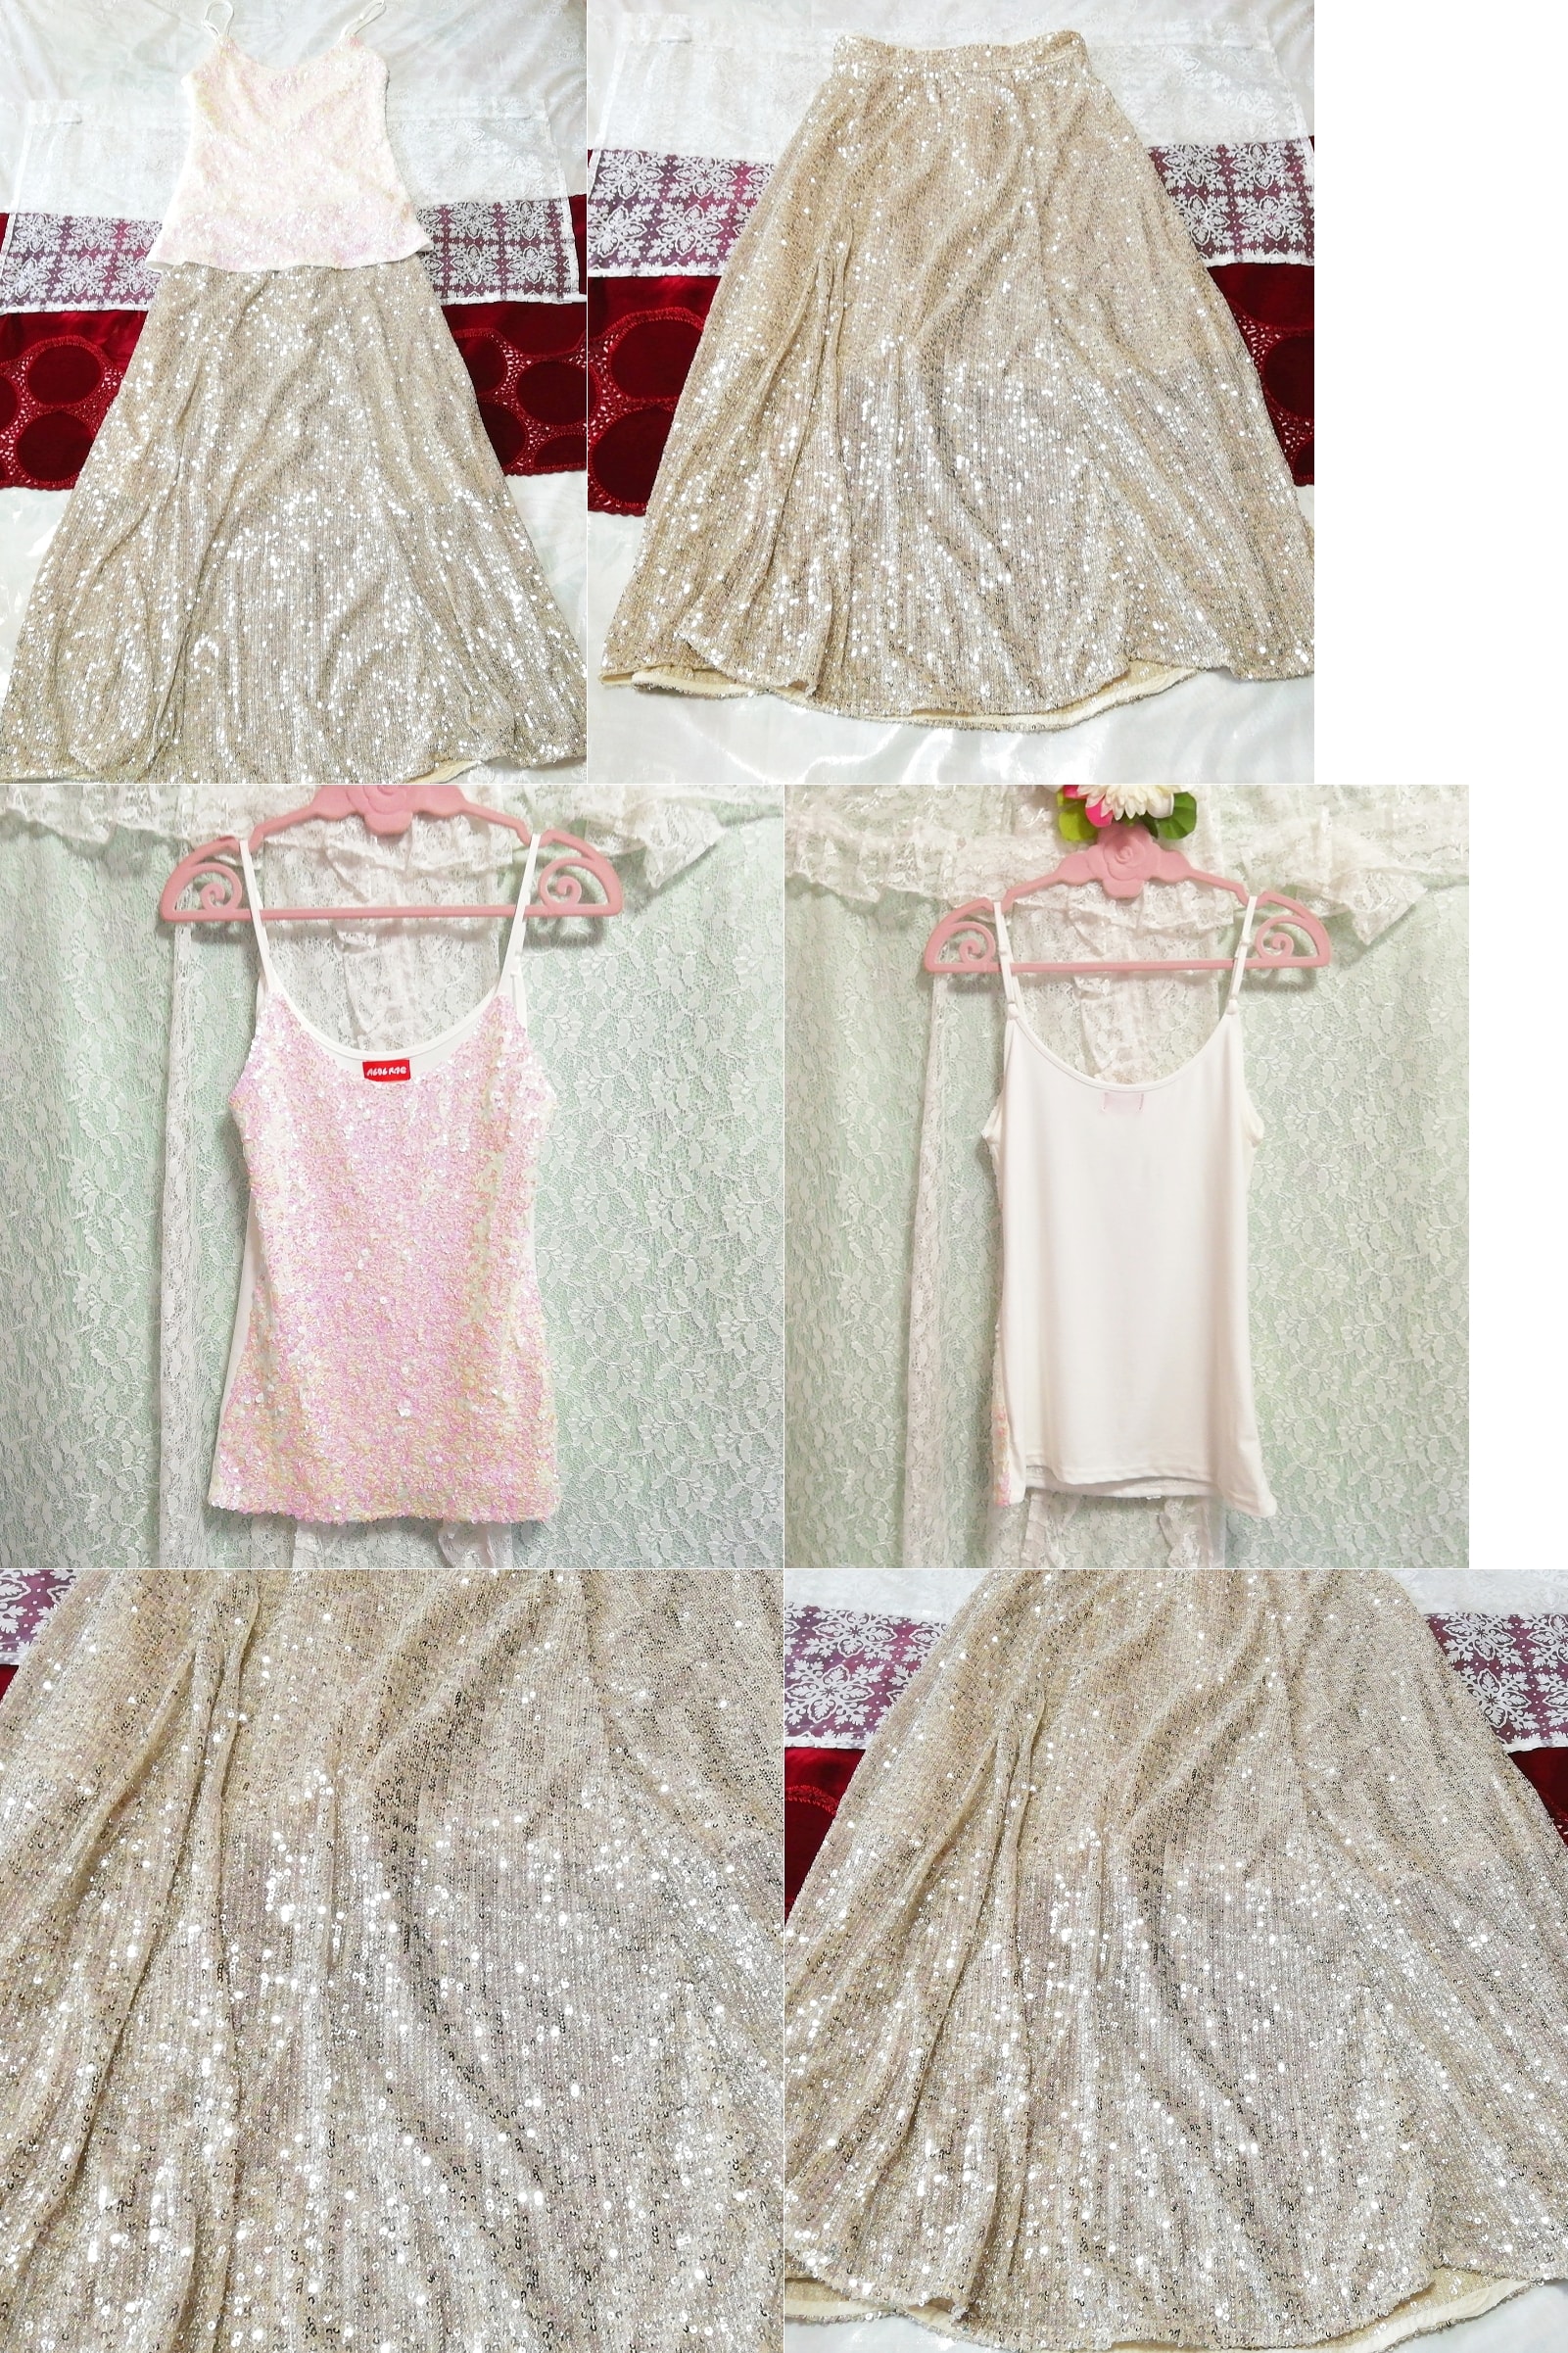 白色粉色闪光吊带背心睡衣亚麻长裙连衣裙 2 件, 时尚, 女士时装, 睡衣